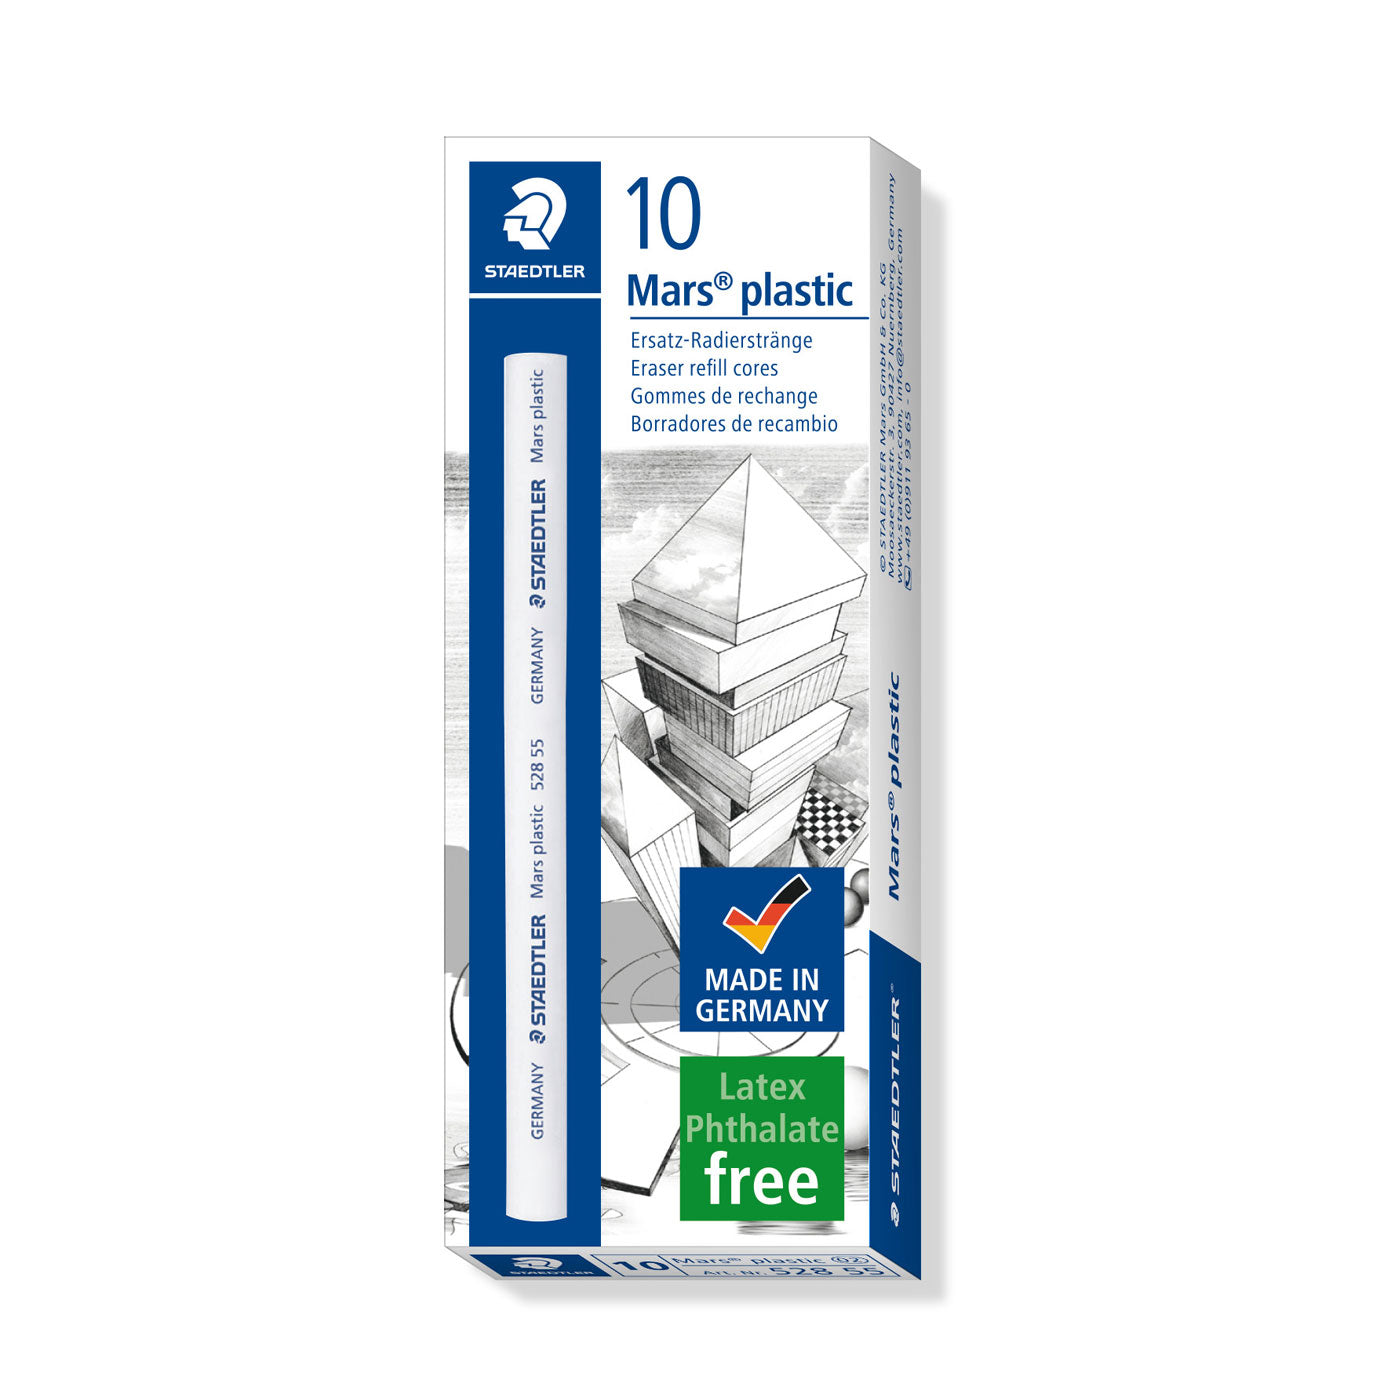 Staedtler Mars Plastic Eraser Refill 528 55 Box of 10